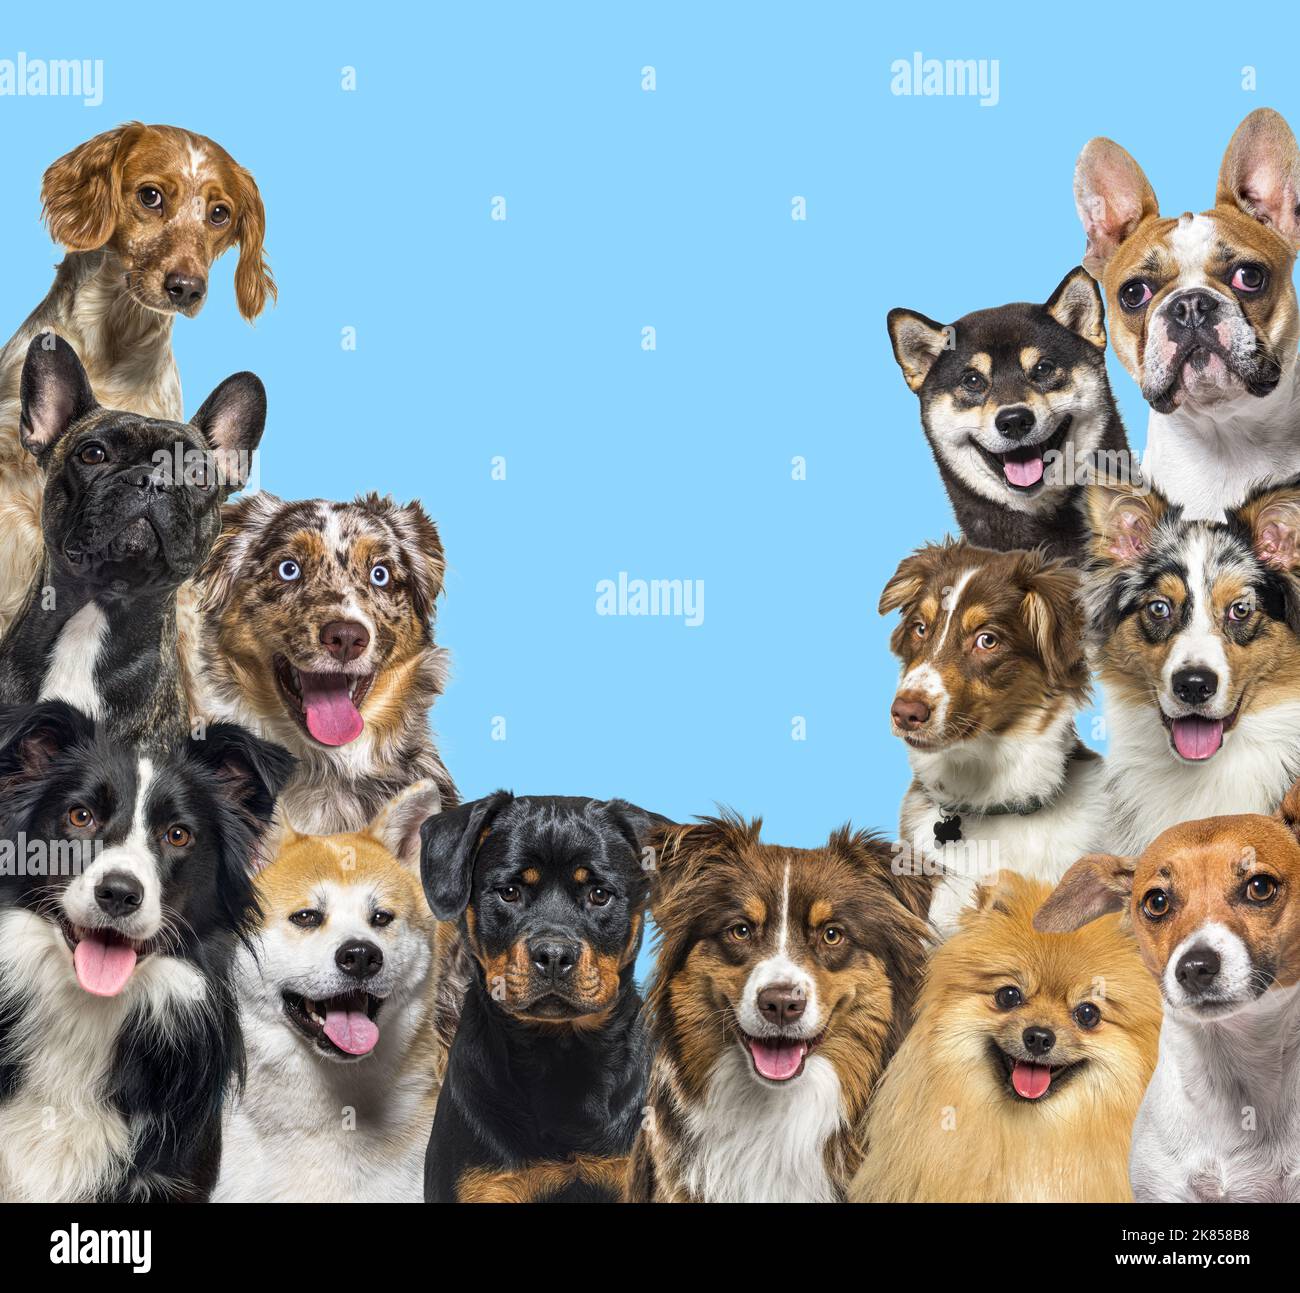 Grand groupe de chiens regardant la caméra sur fond bleu Banque D'Images